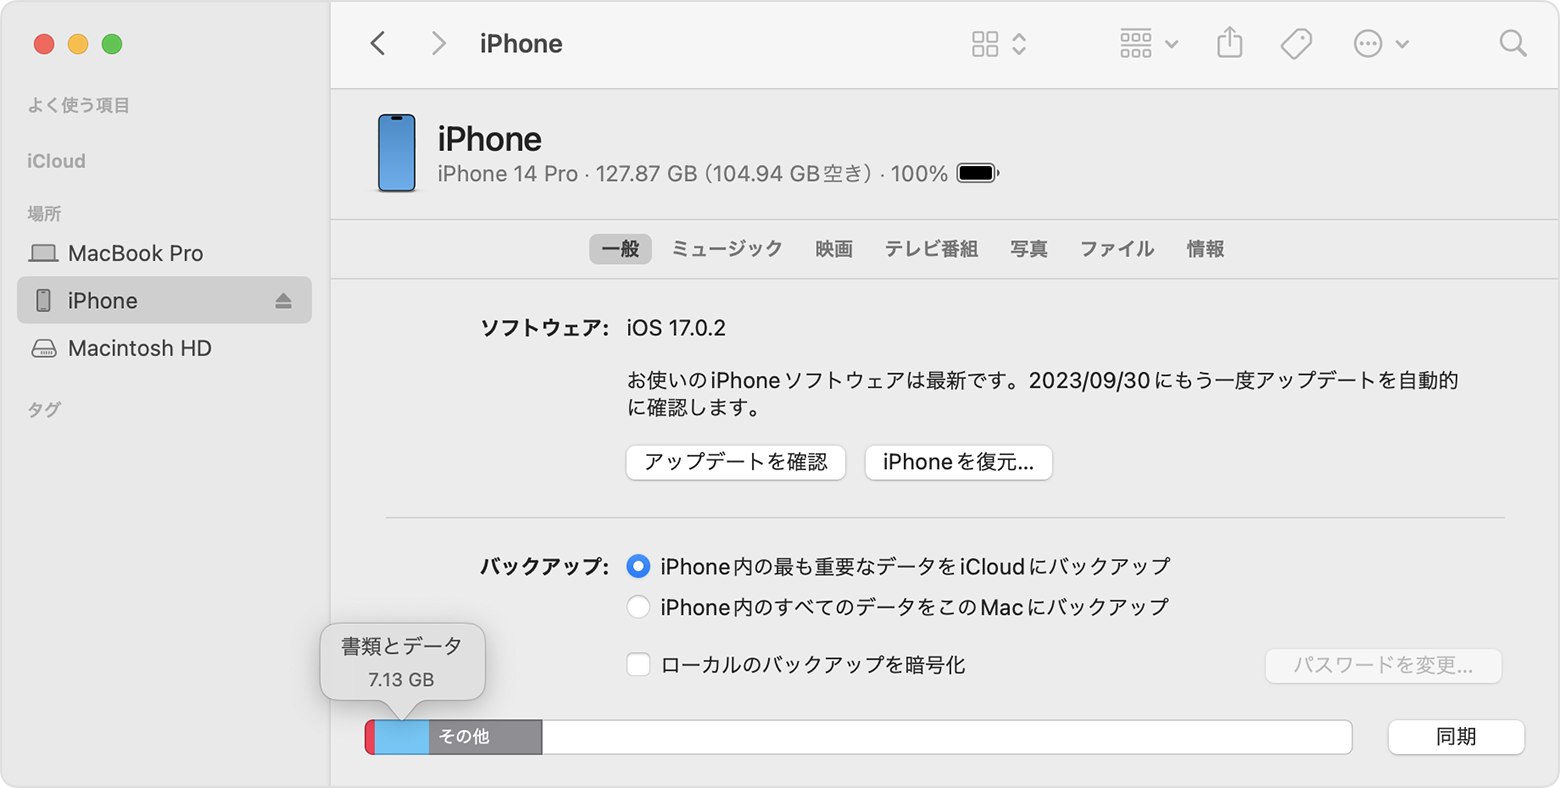 Mac の画面。Finder を使って iOS デバイスのストレージを確認する様子が示されています。